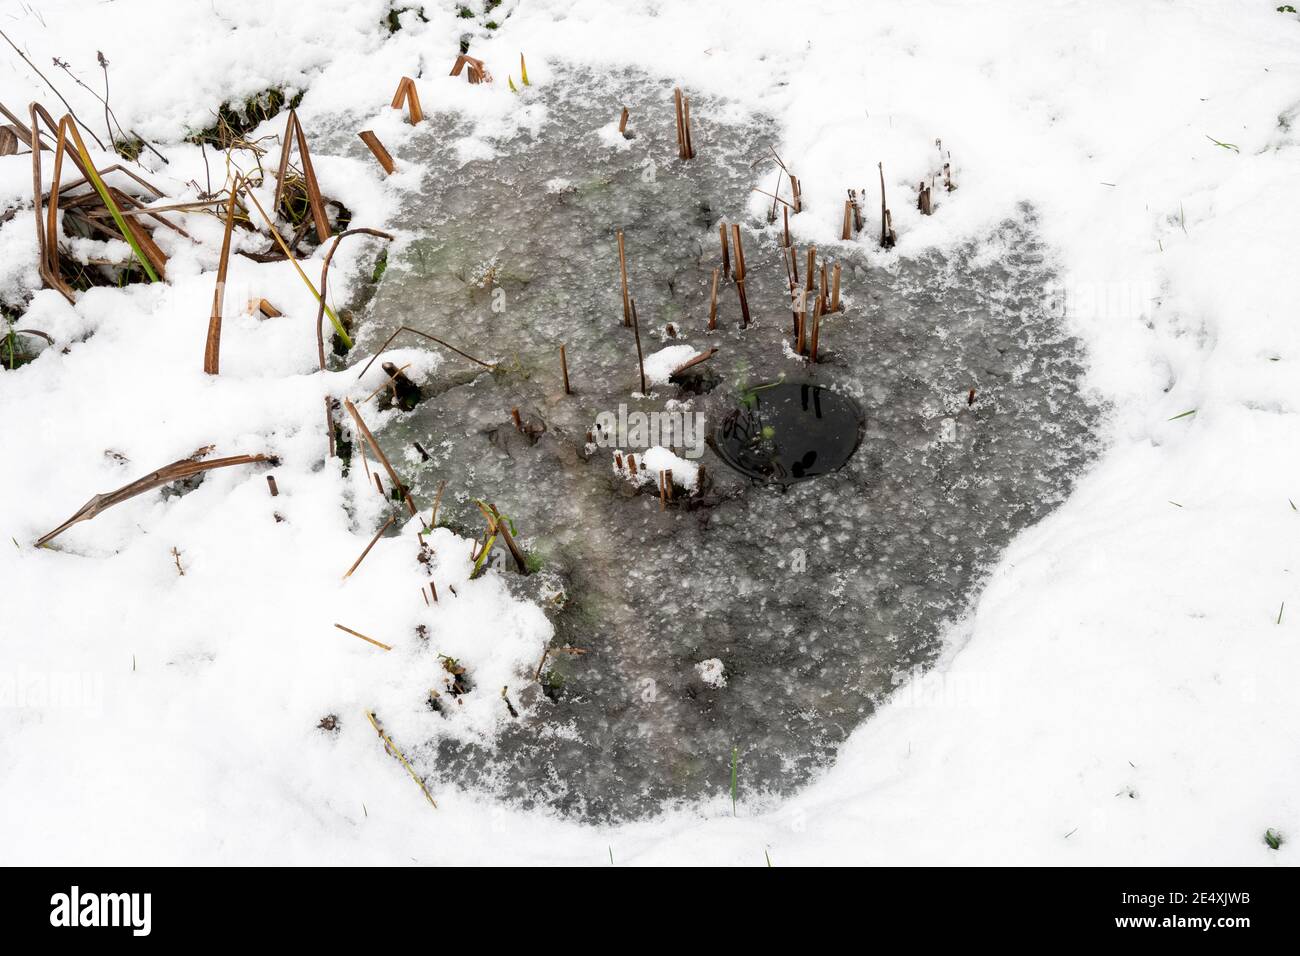 Bassin de la faune du jardin gelé en hiver après avoir décongelé un timbre, faisant un trou avec une casserole d'eau bouillante, pour permettre à l'oxygène d'entrer Banque D'Images